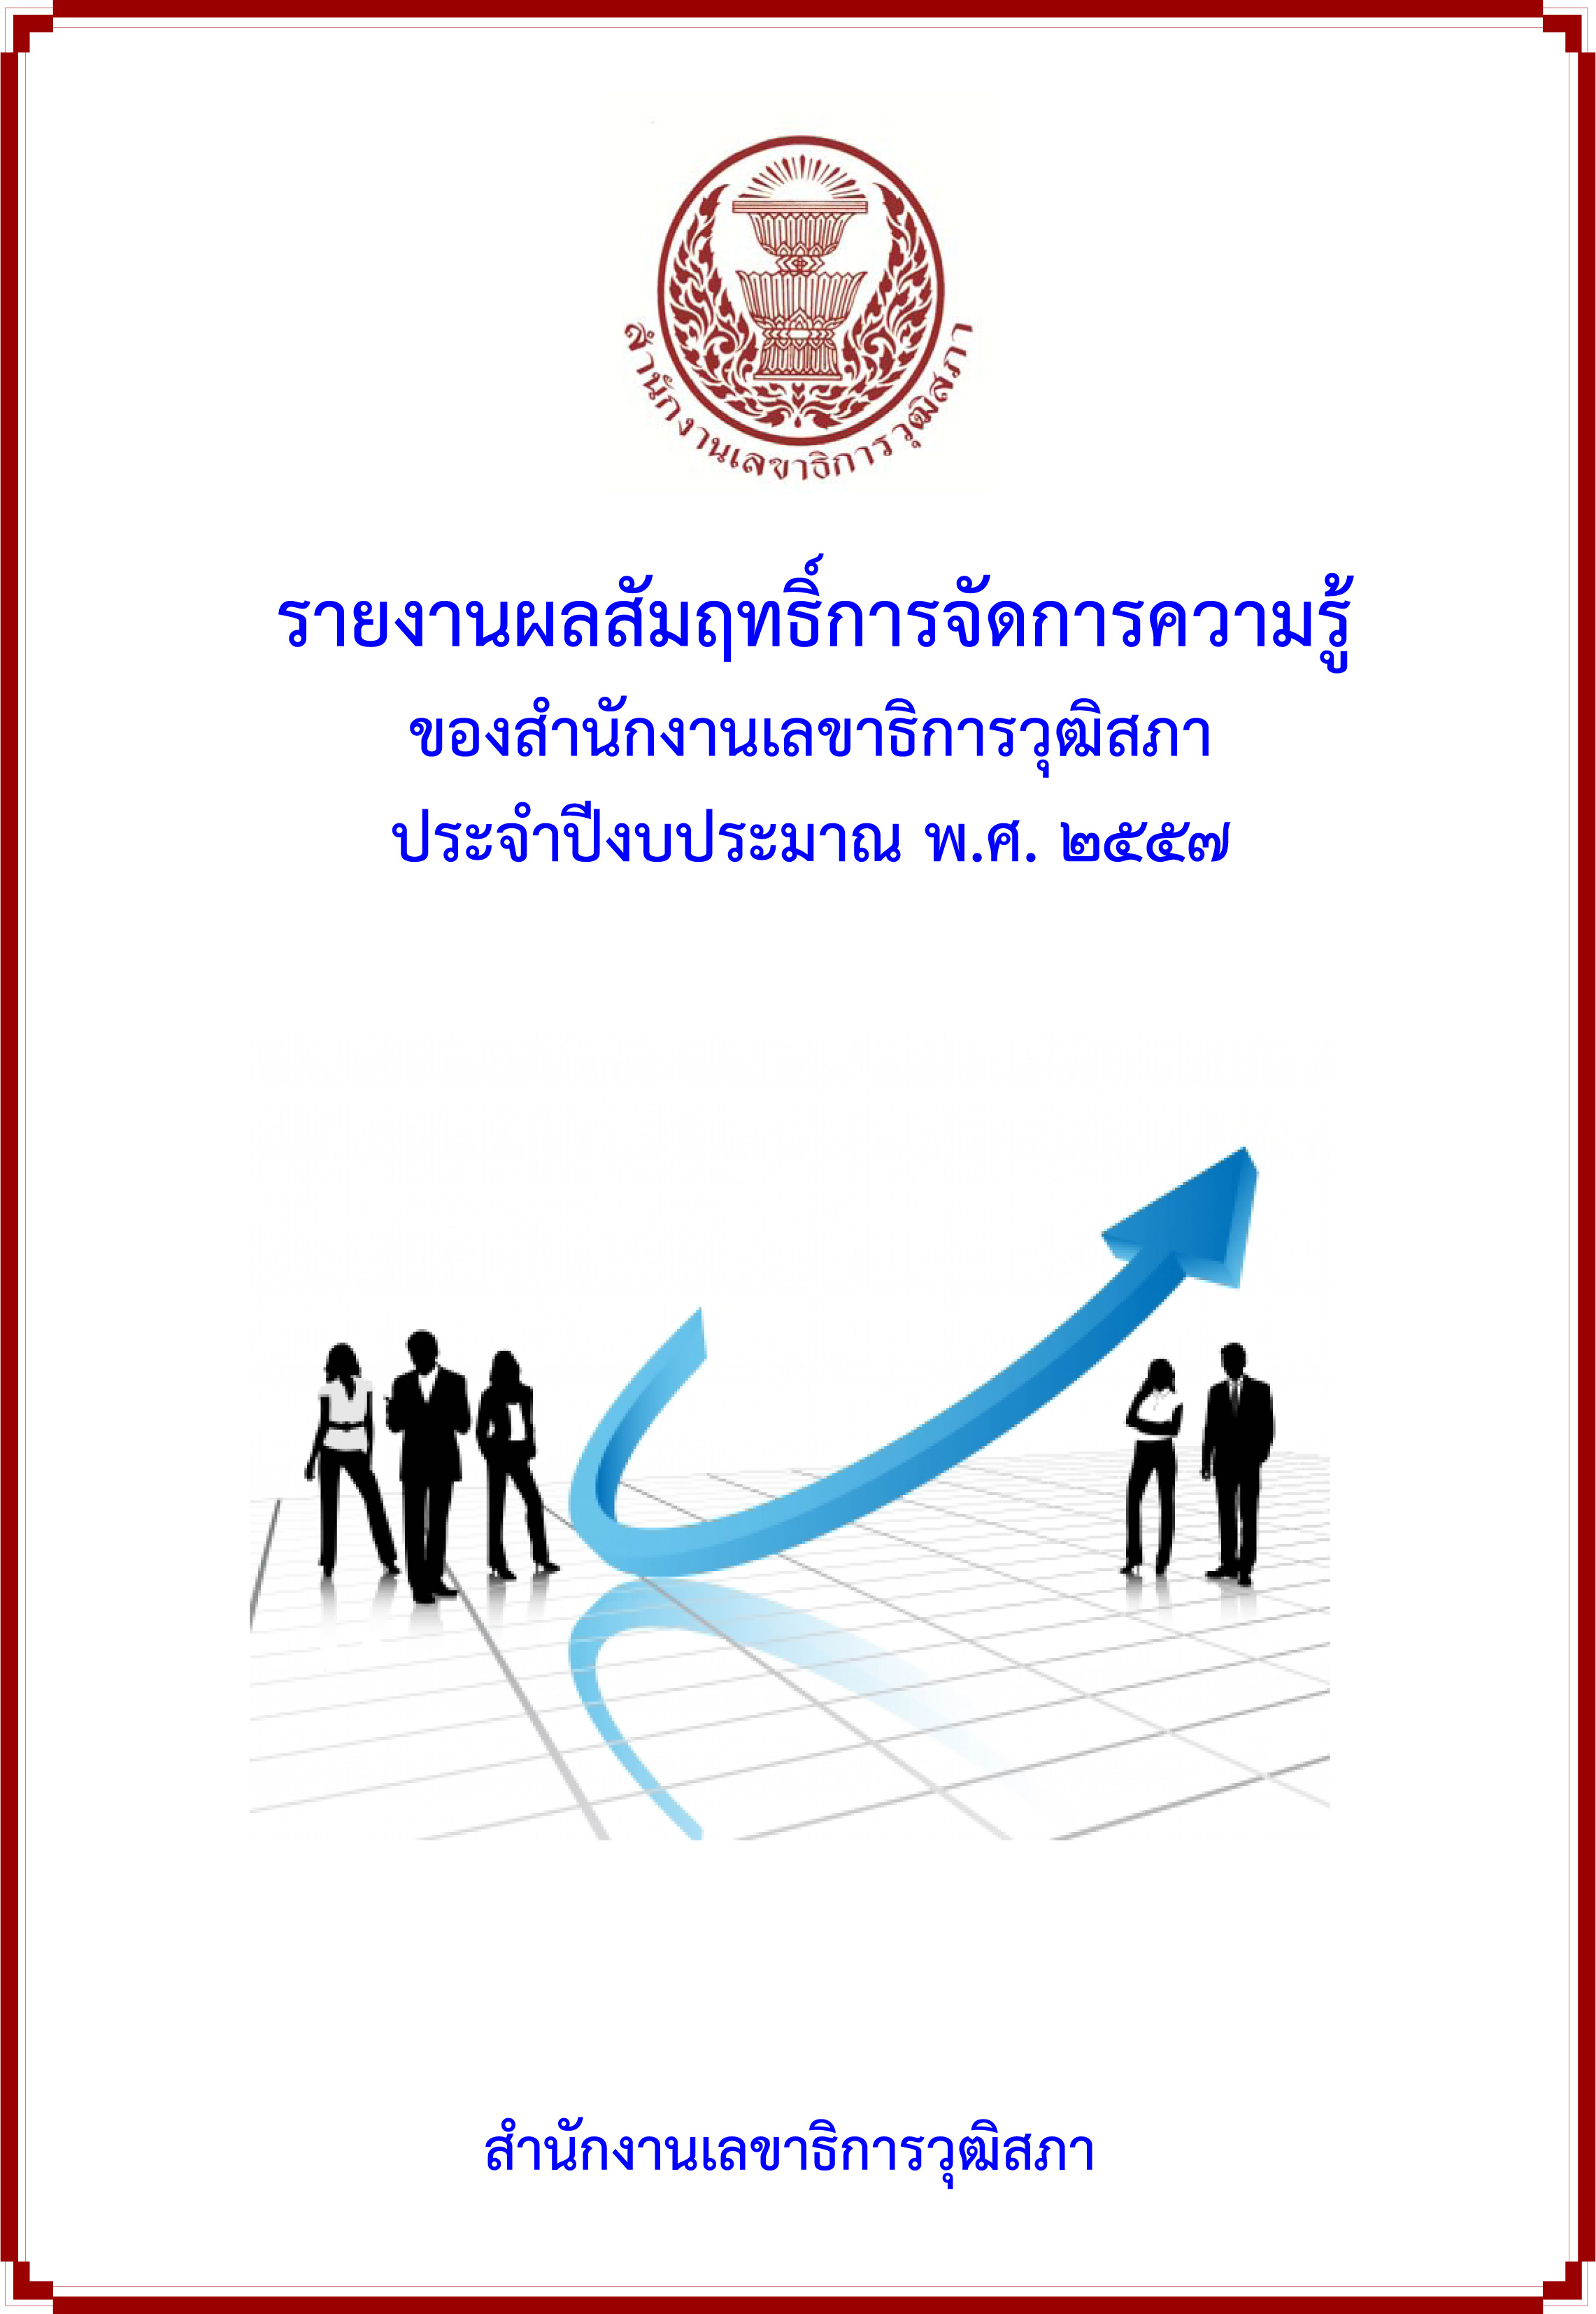 รายงานผลสัมฤทธิ์การจัดการความรู้ ของสำนักงานเลขาธิการวุฒิสภา ประจำปี 2557